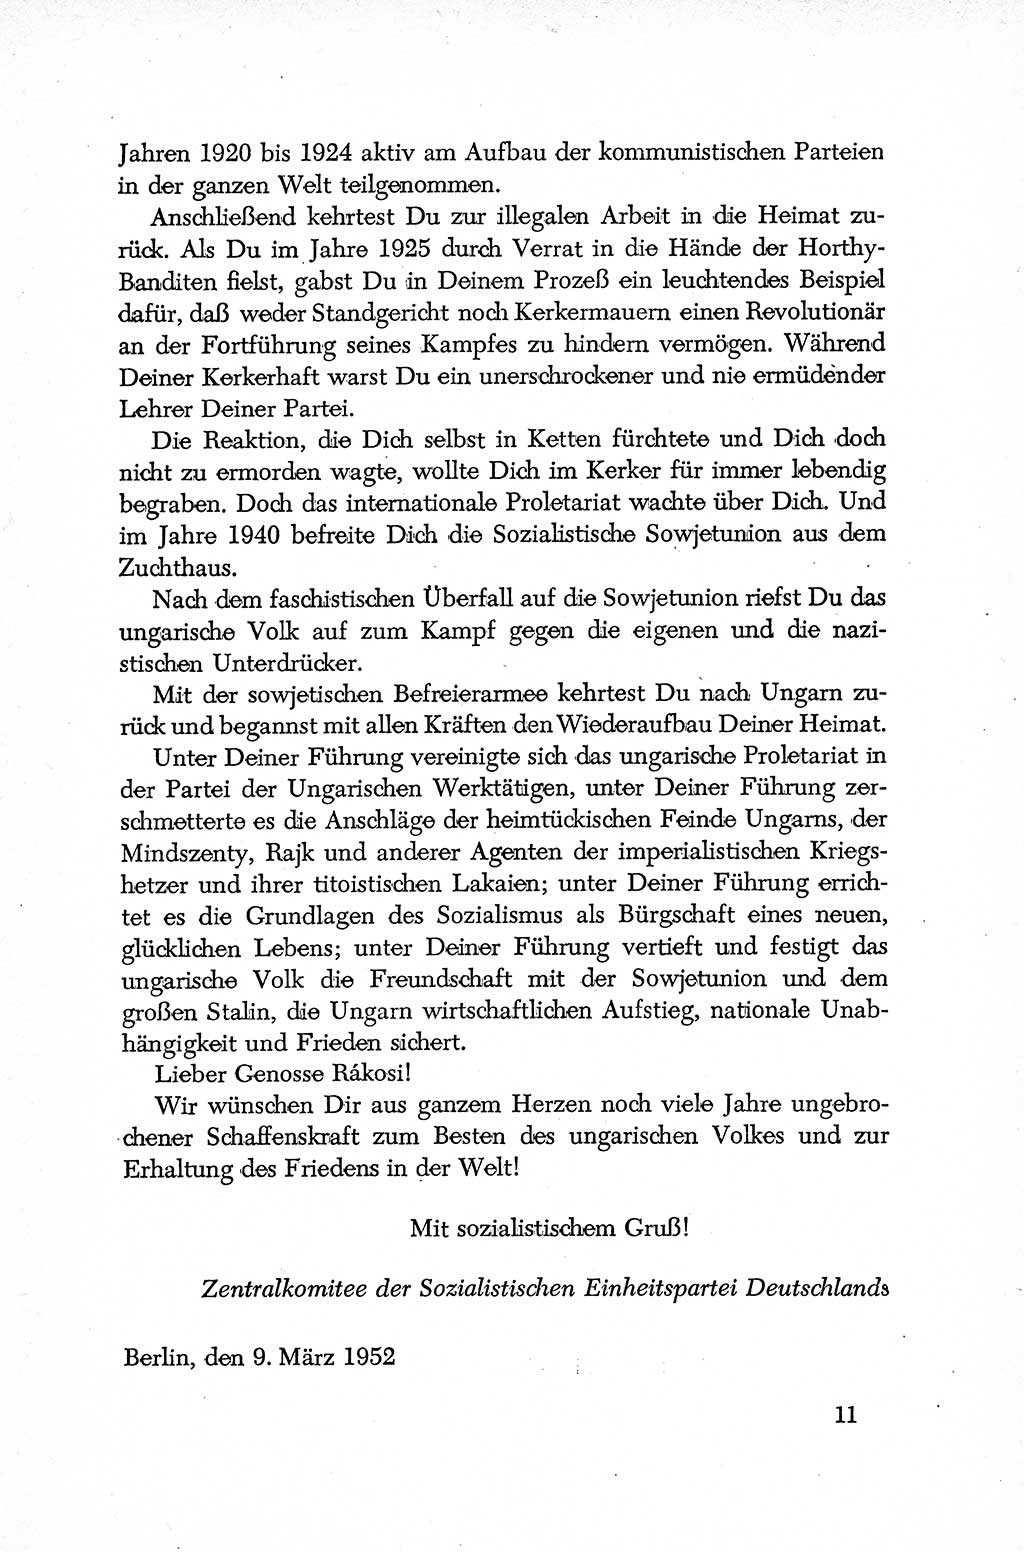 Dokumente der Sozialistischen Einheitspartei Deutschlands (SED) [Deutsche Demokratische Republik (DDR)] 1952-1953, Seite 11 (Dok. SED DDR 1952-1953, S. 11)